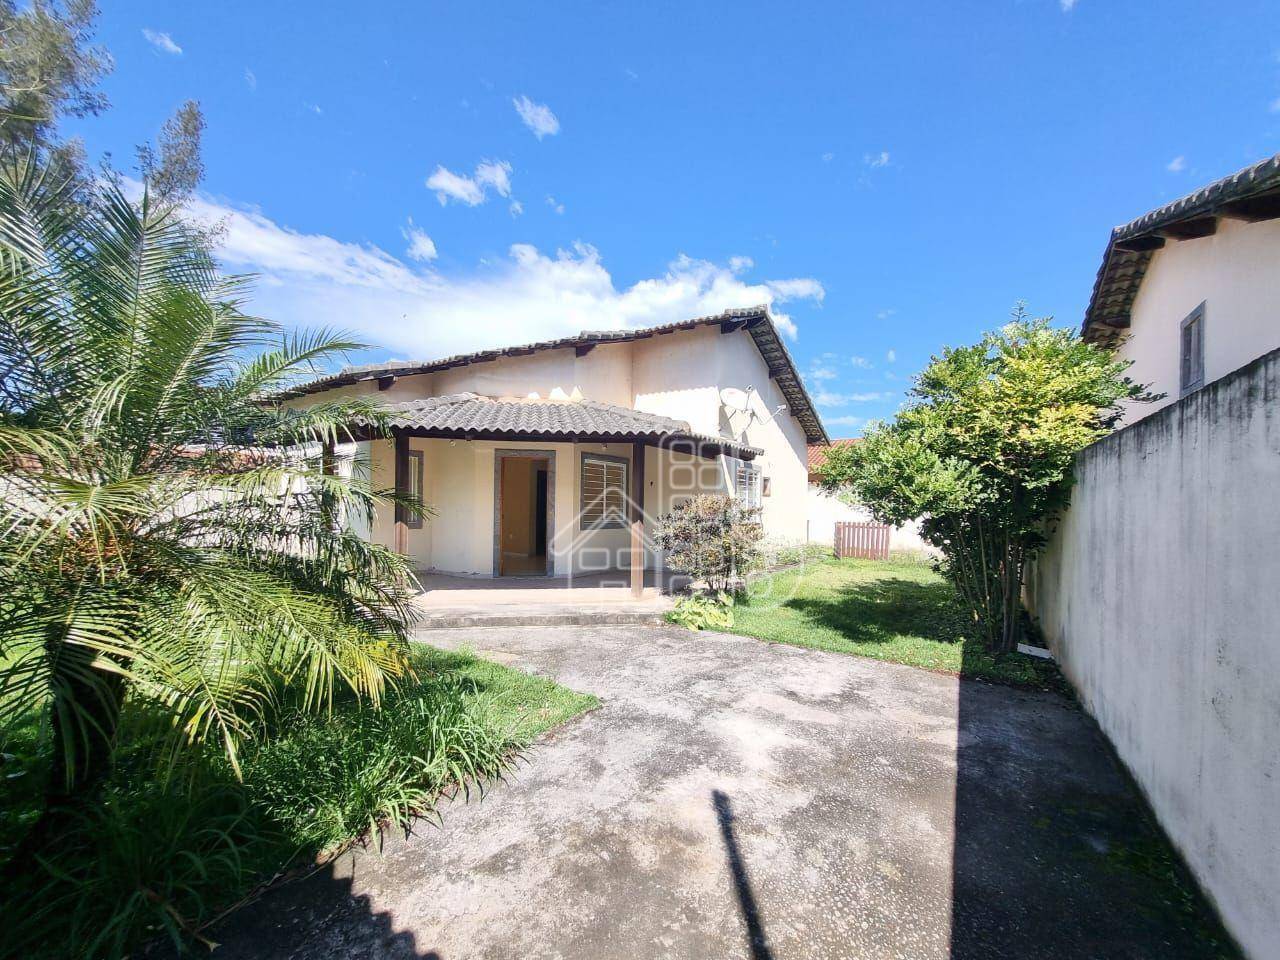 Casa com 2 dormitórios à venda, 87 m² por R$ 450.000,00 - Barroco (Itaipuaçu) - Maricá/RJ